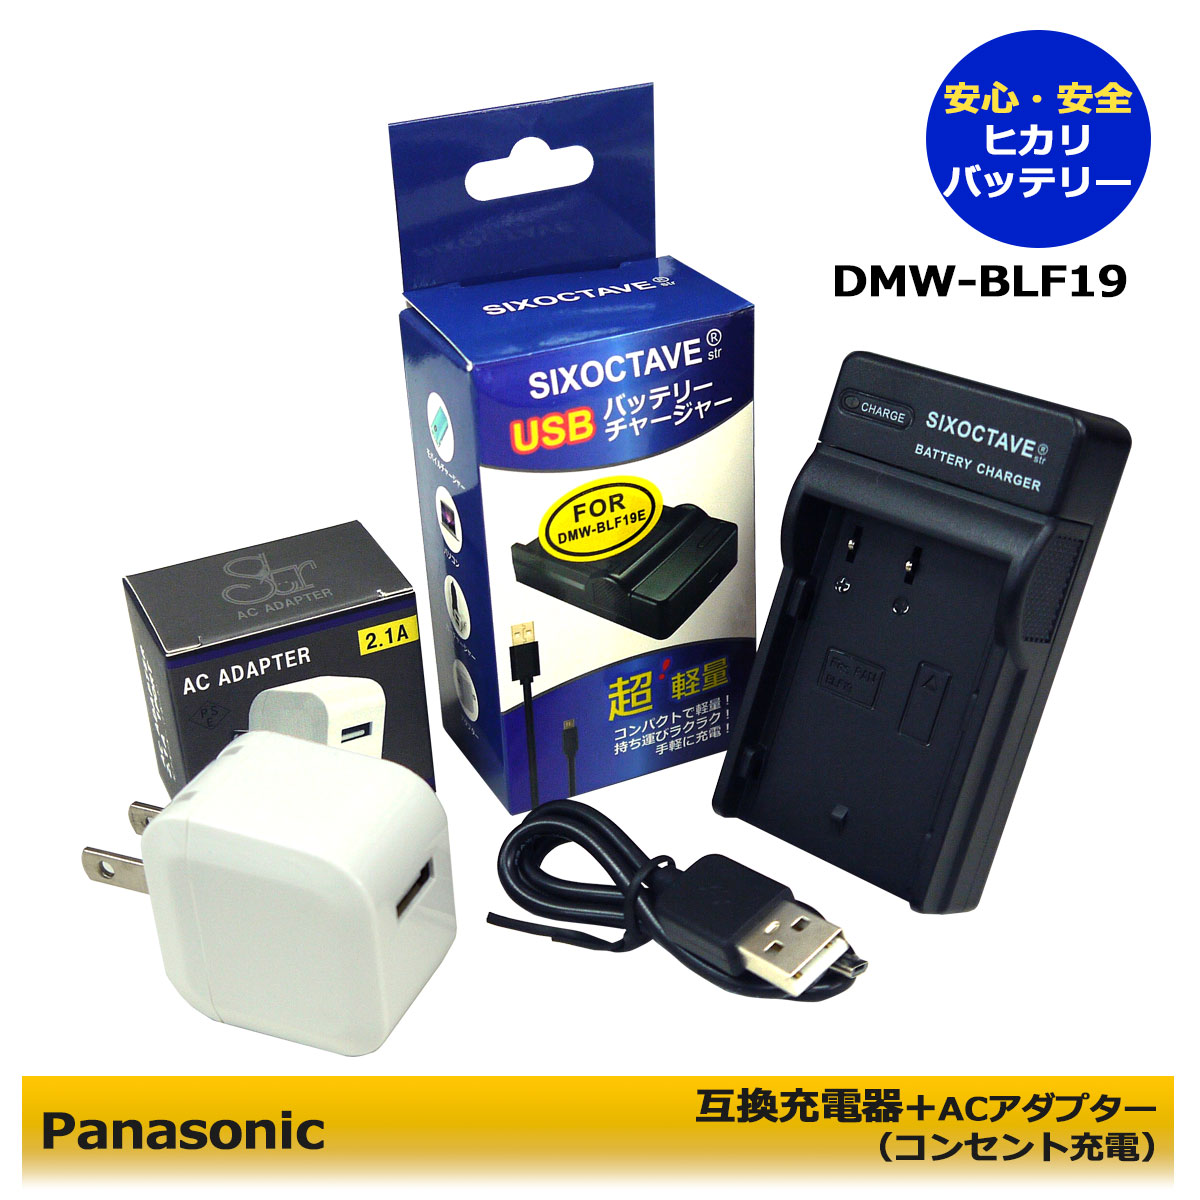 カメラ・ビデオカメラ・光学機器, ビデオカメラ Panasonic DMW-BTC10 BC-61 USB 1AC12 DMW-BLF19 DMW-BLF19E BP-61 DC-GH5M DC-G9 DC-G9L sd Quattr DMC-GH3KBODY DMC-GH4 DMC-GH4A DMC-GH4H (A2.1)